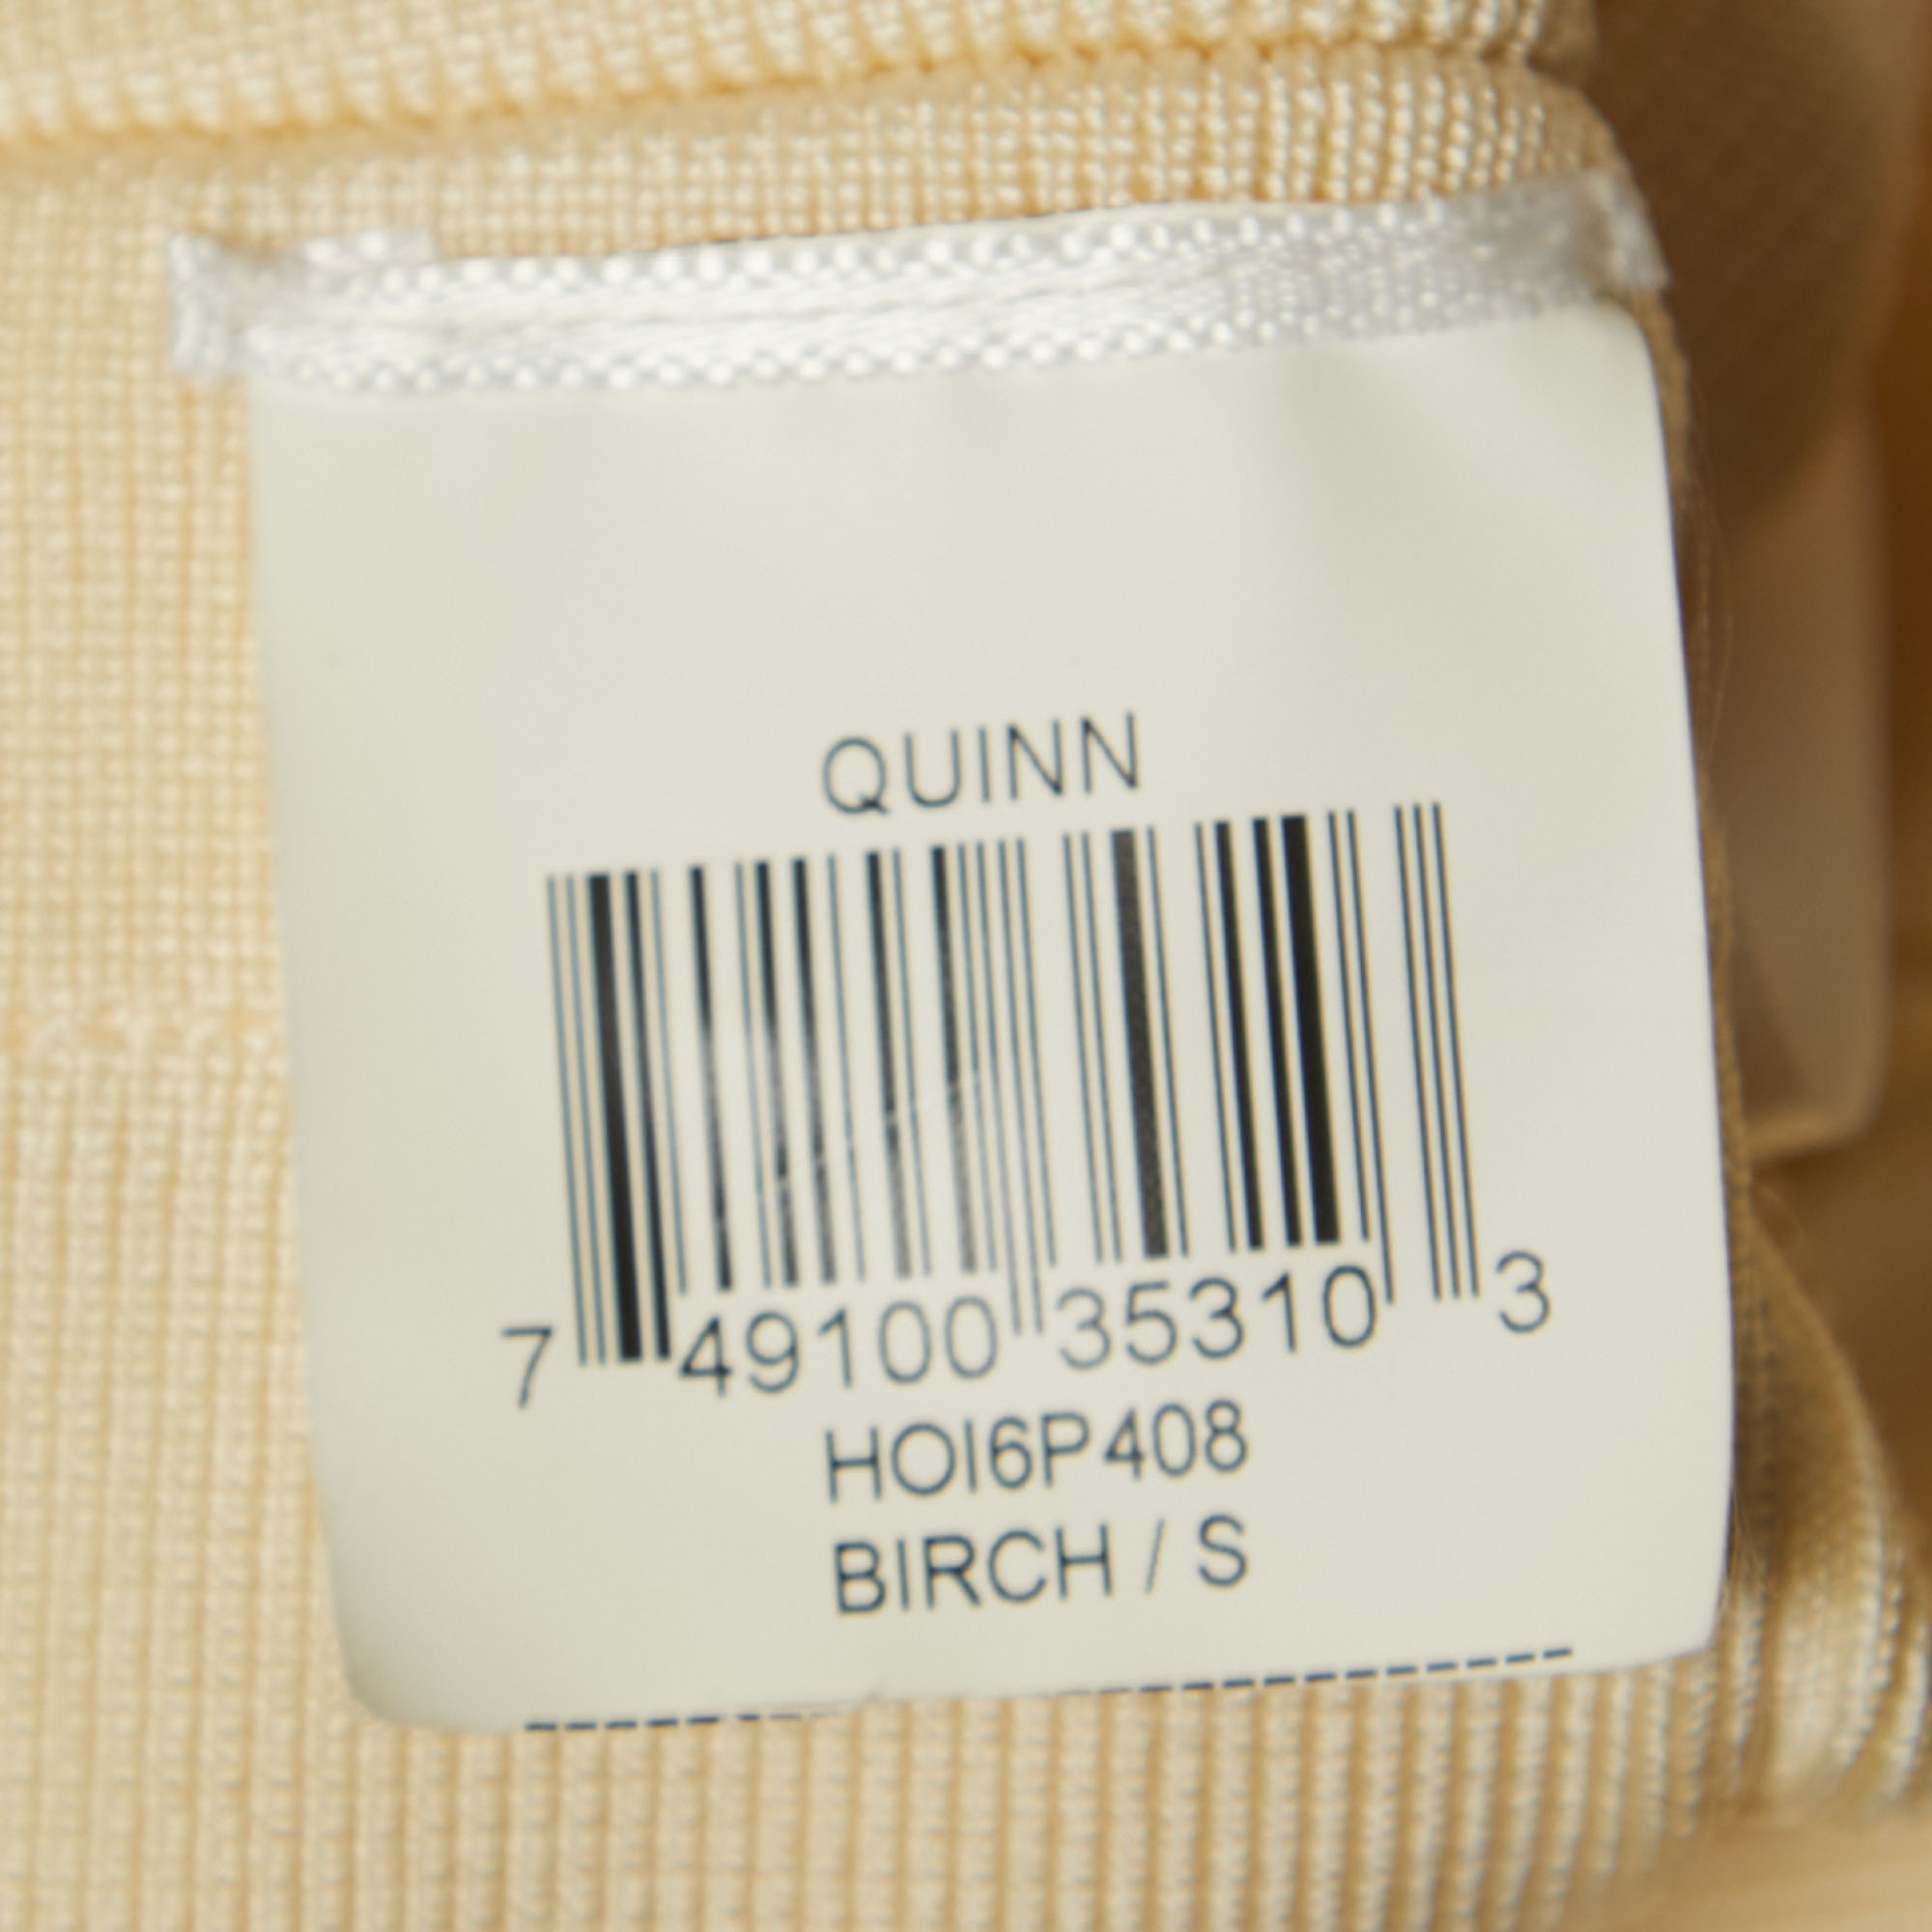 Herve Leger Cream Knit Quinn Mini Bandage Dress S